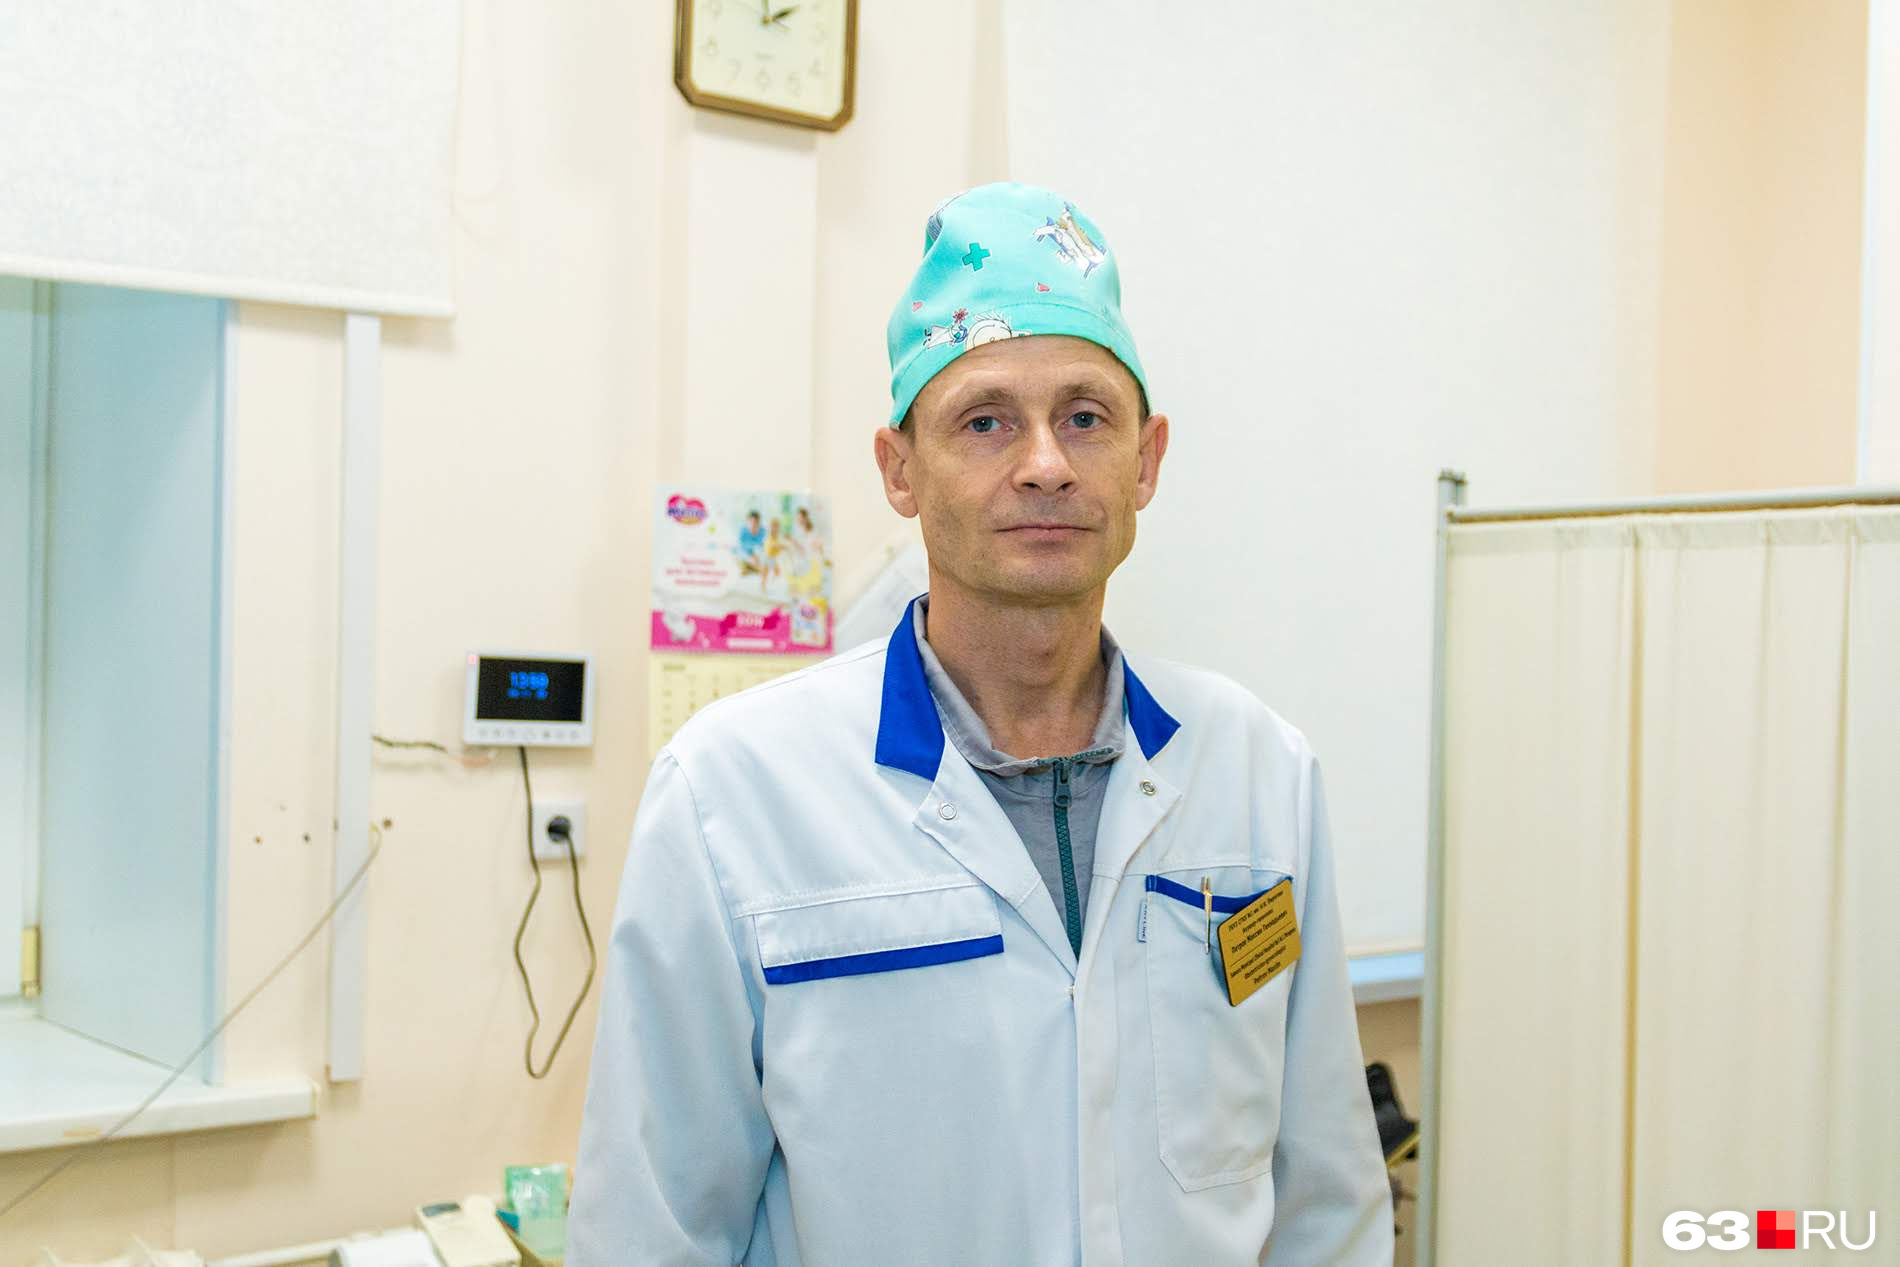 «В год мы принимаем примерно 2000 родов», — рассказывает Максим Петров